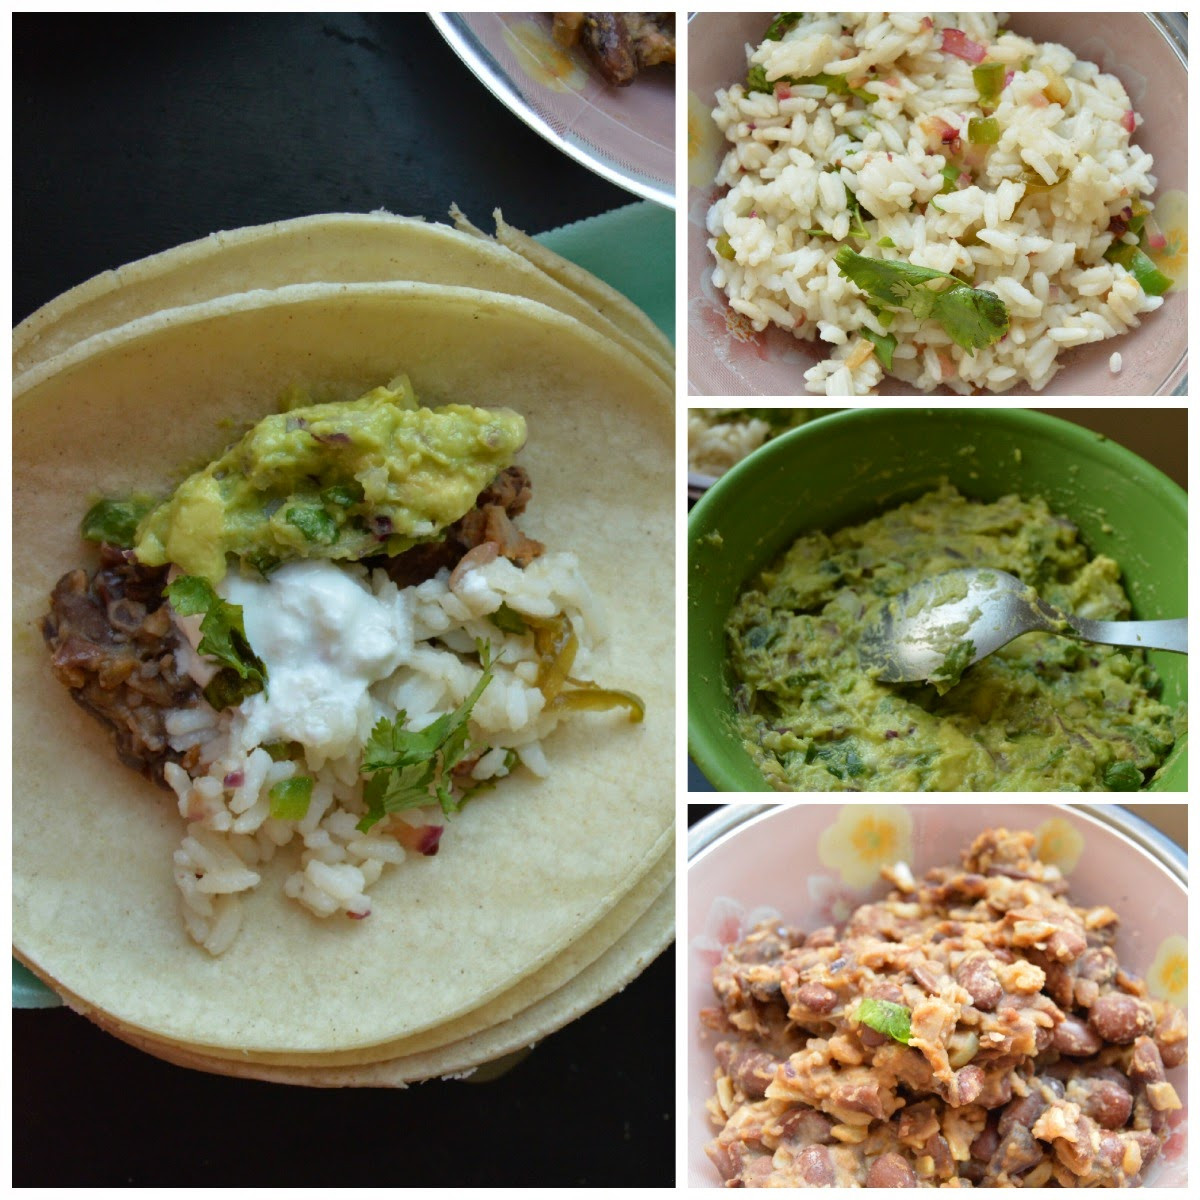 Vegetarian Burrito Recipes
 Ve arian Burrito Recipe